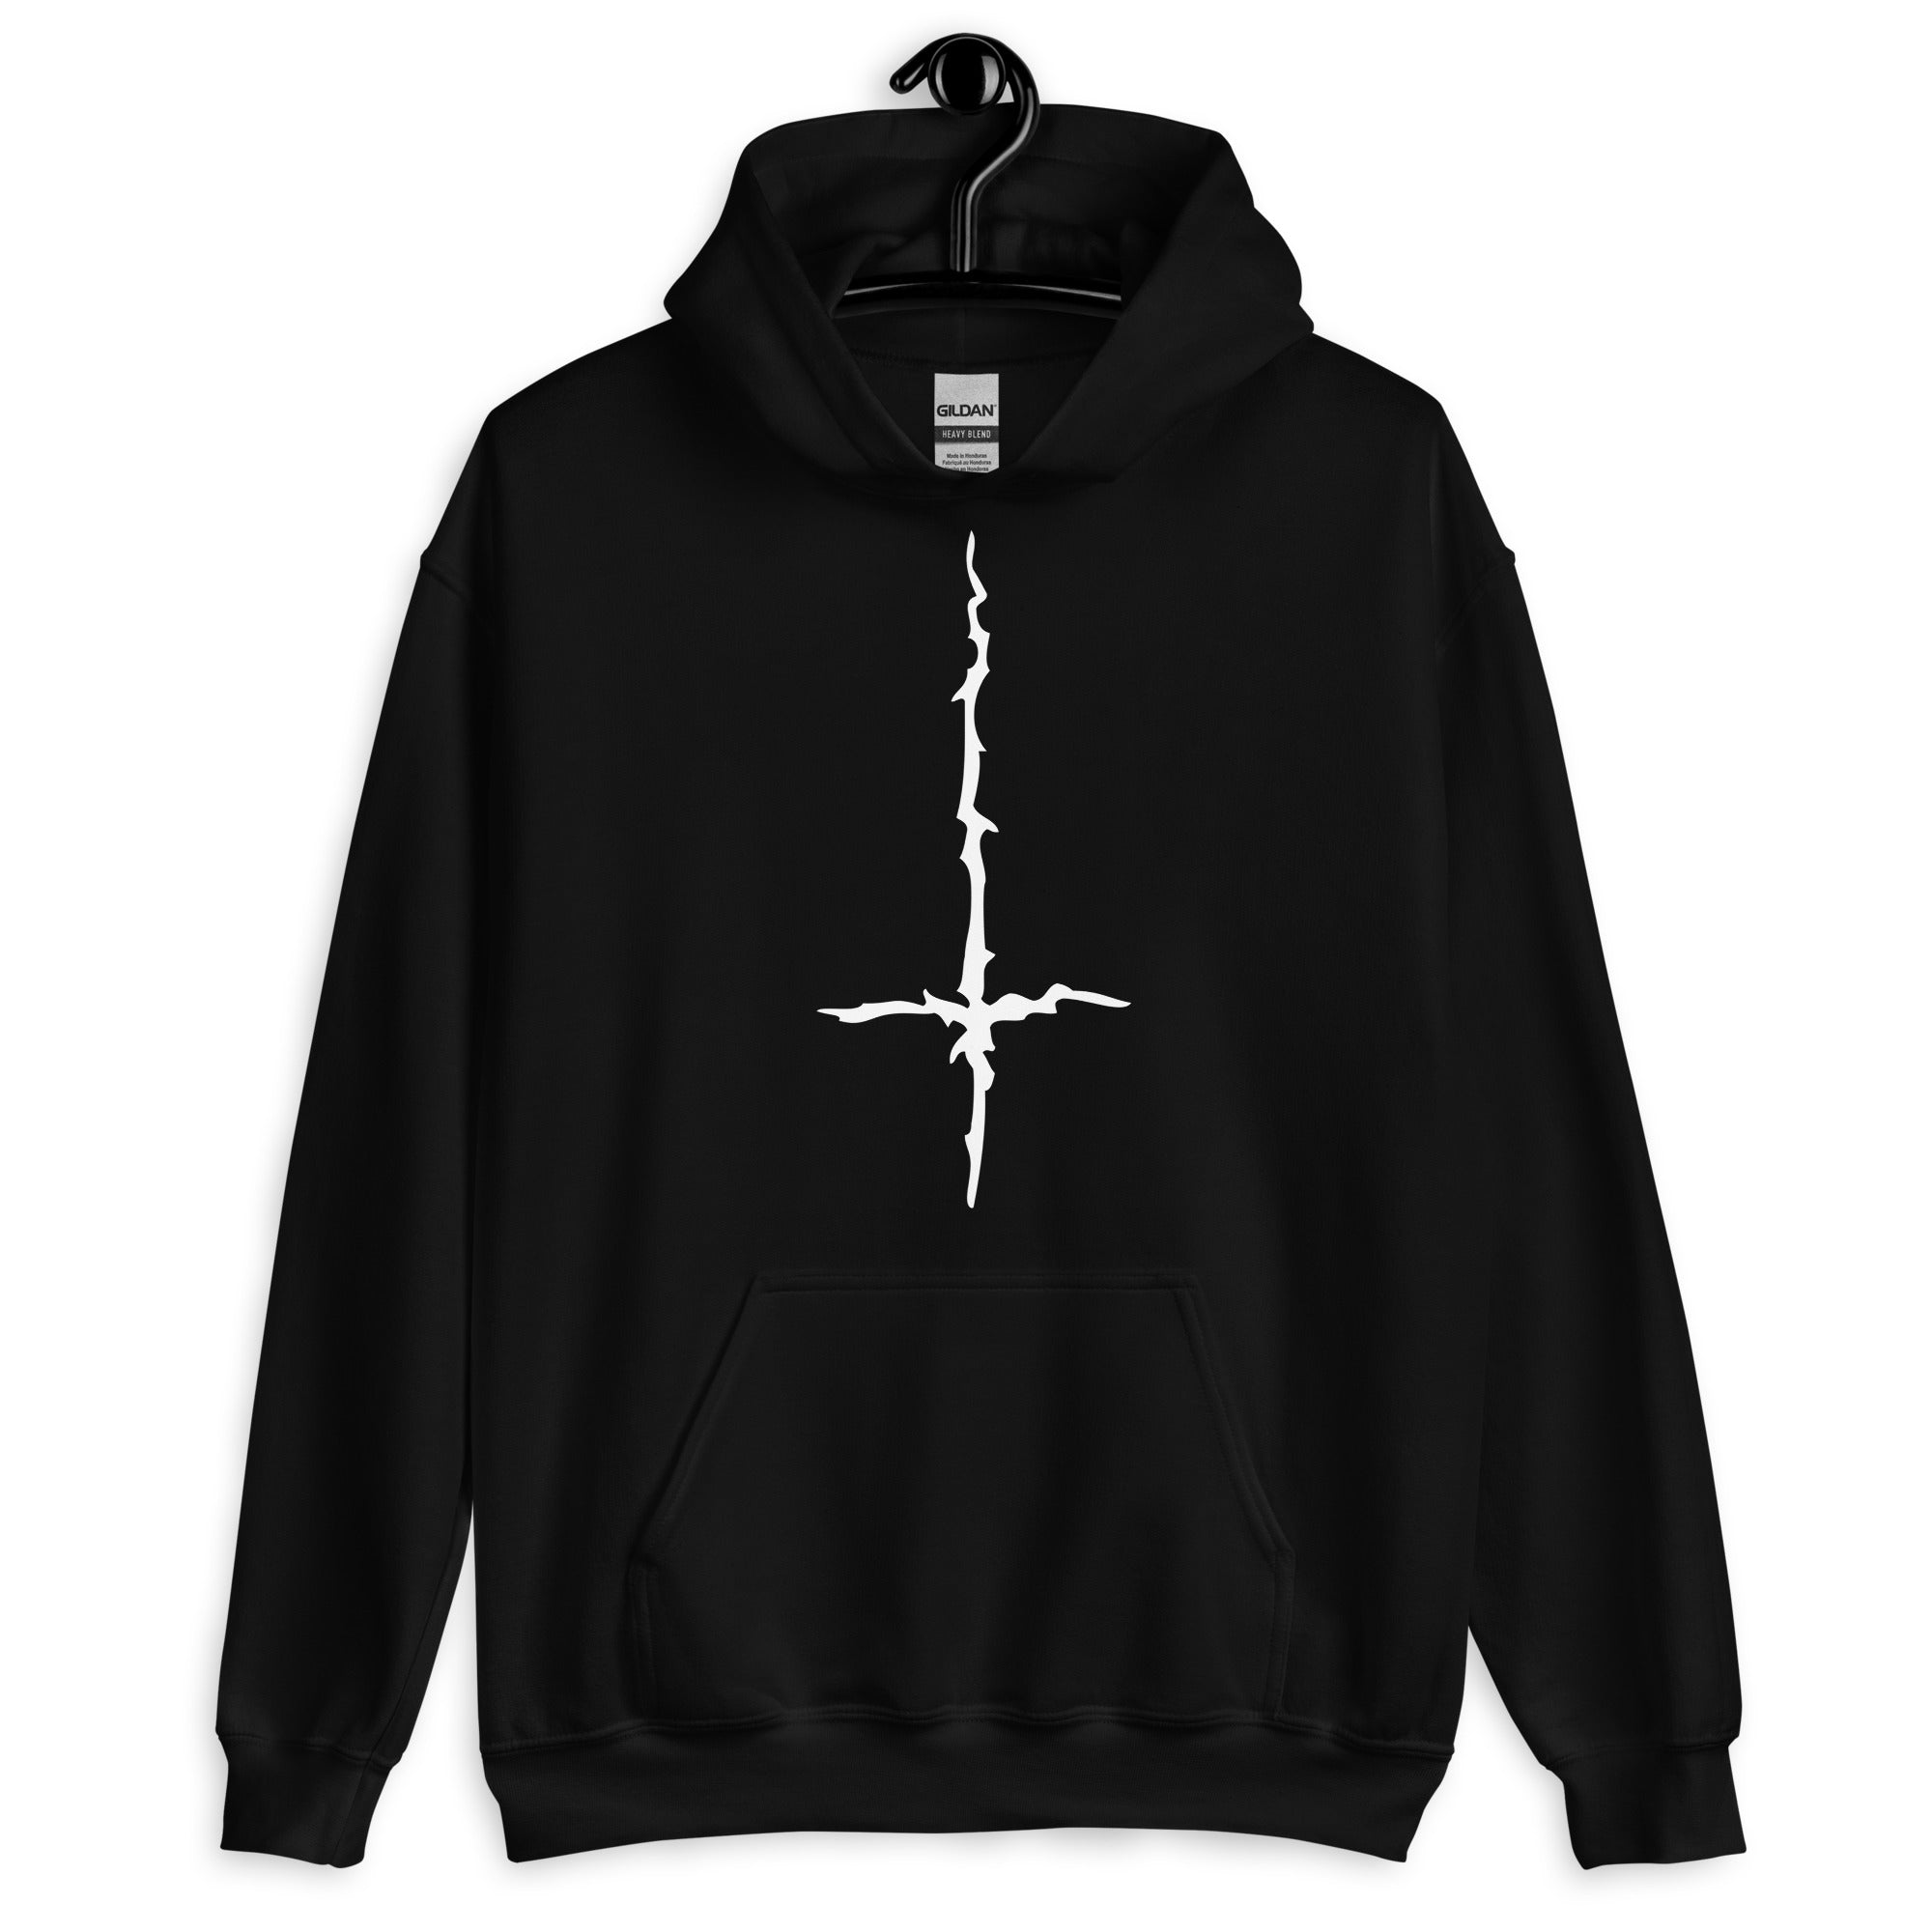 White Melting Inverted Cross Black Metal Style Unisex Hoodie Sweatshirt